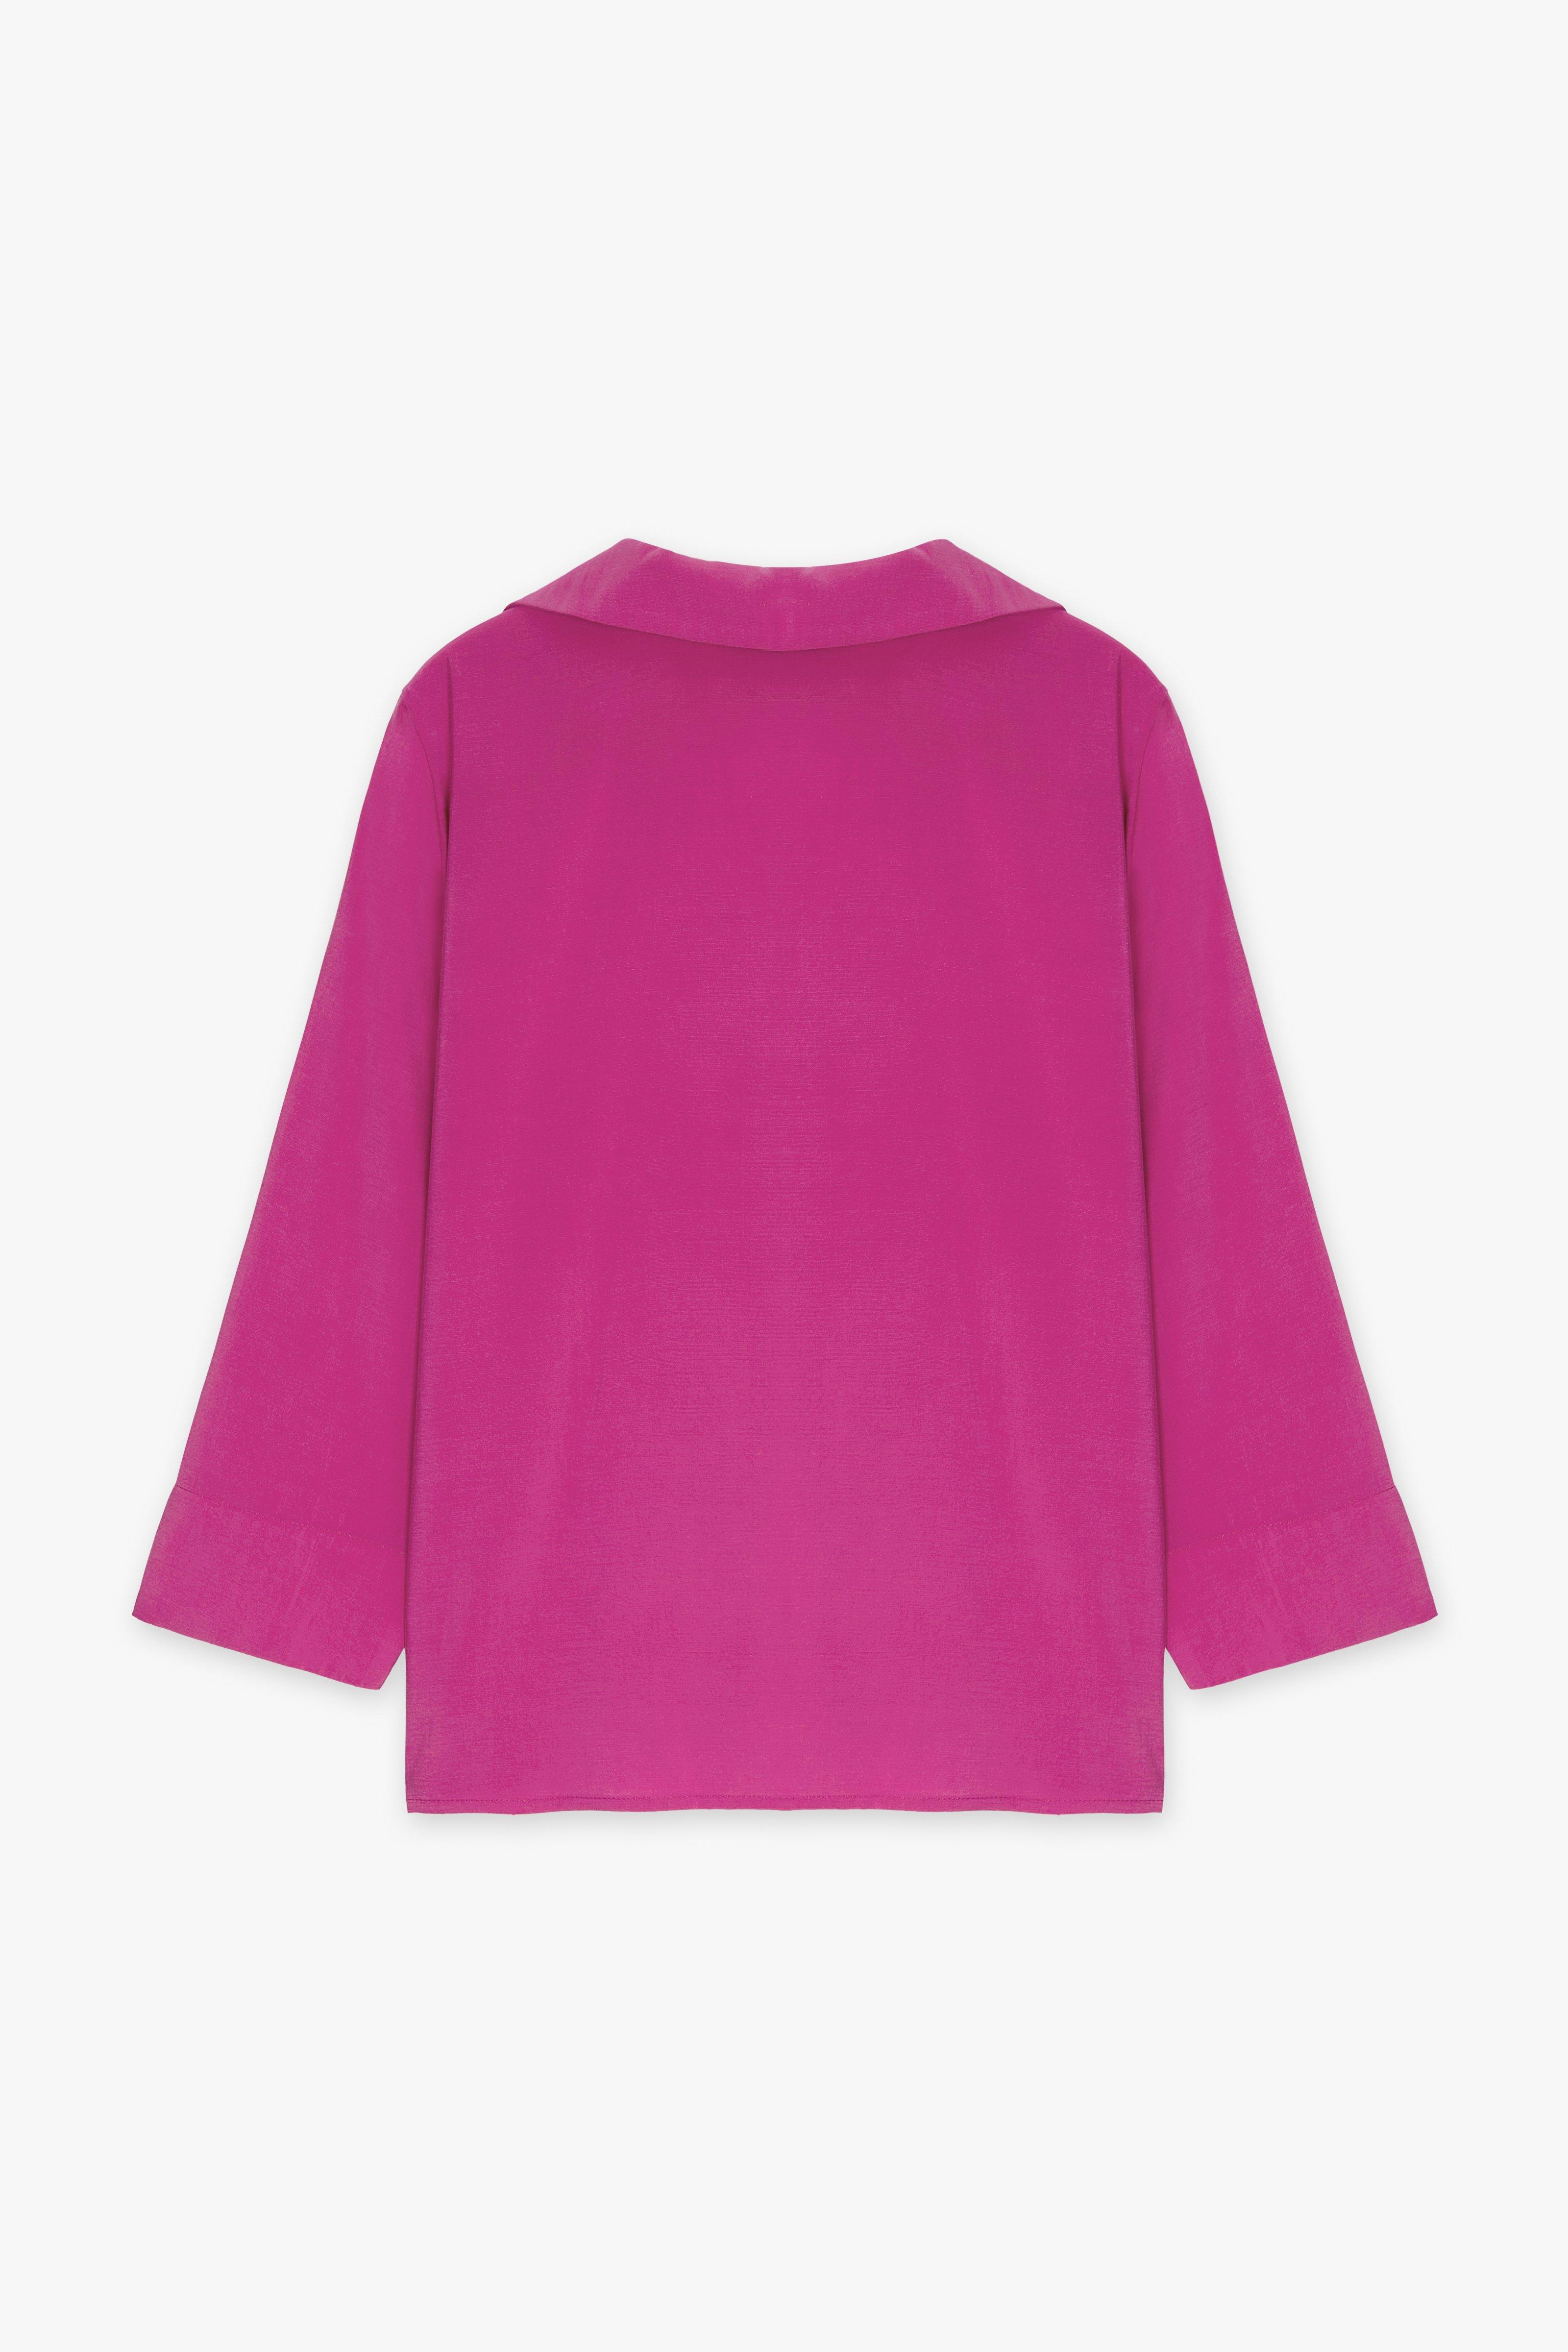 CKS Dames - SOLEDO - blouse lange mouwen - roze